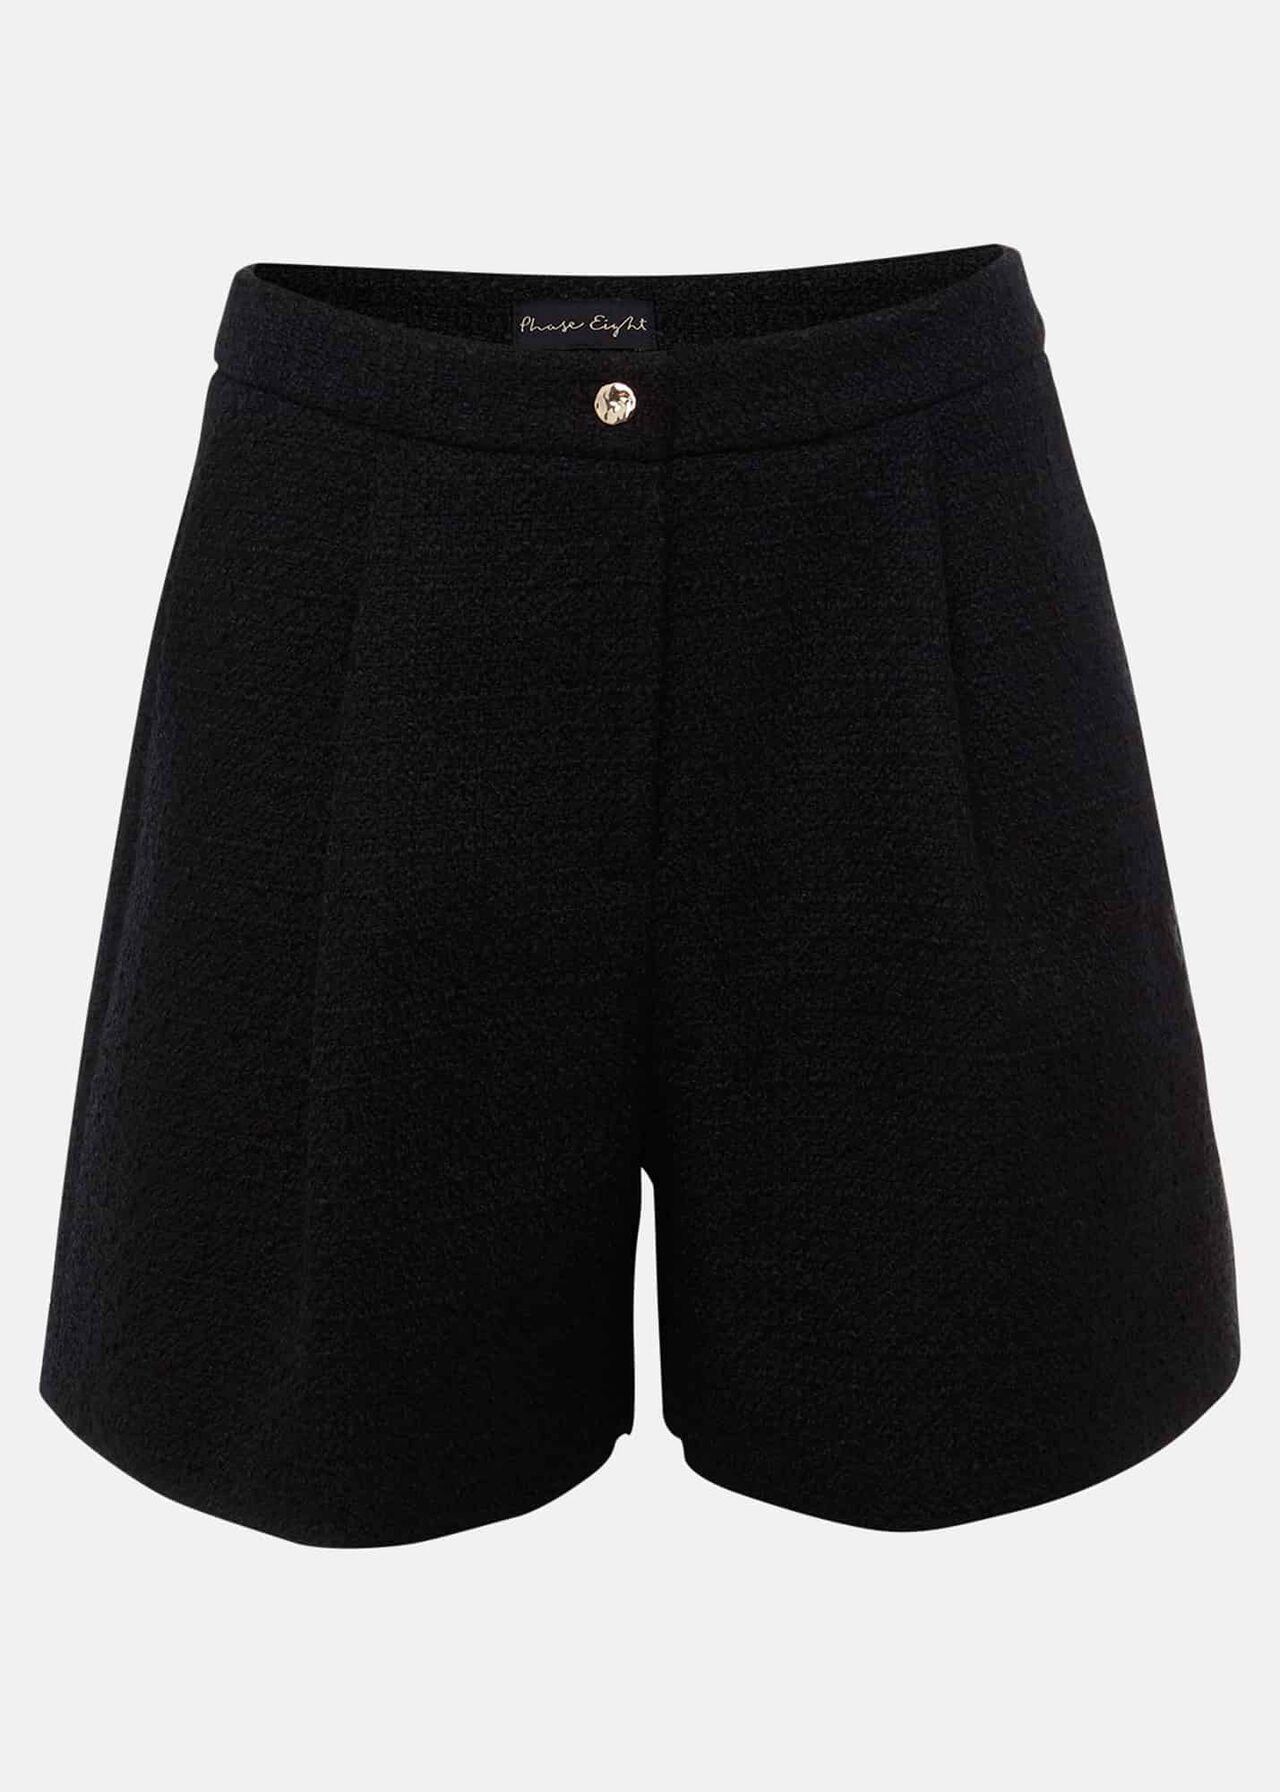 Auden Black Suit Shorts